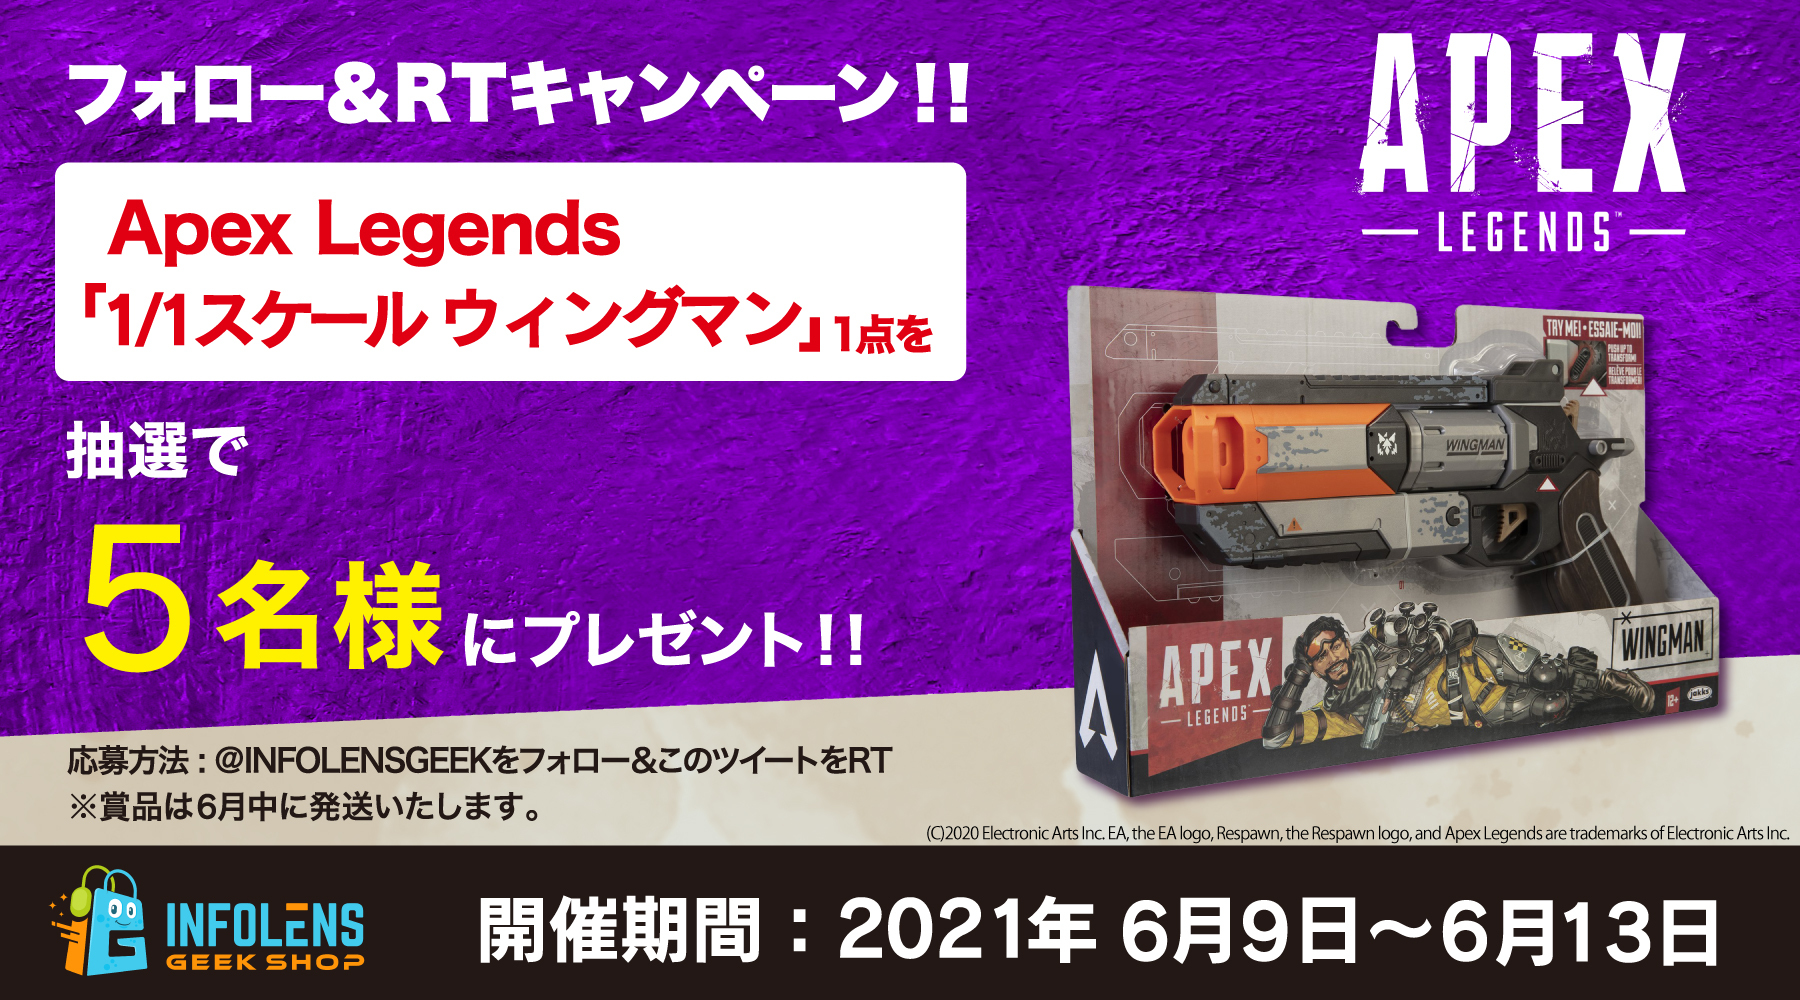 最強のハンドガン再び Apex Legends 1 1スケール ウィングマンプレゼントキャンペーン開催 インフォレンズ株式会社のプレスリリース